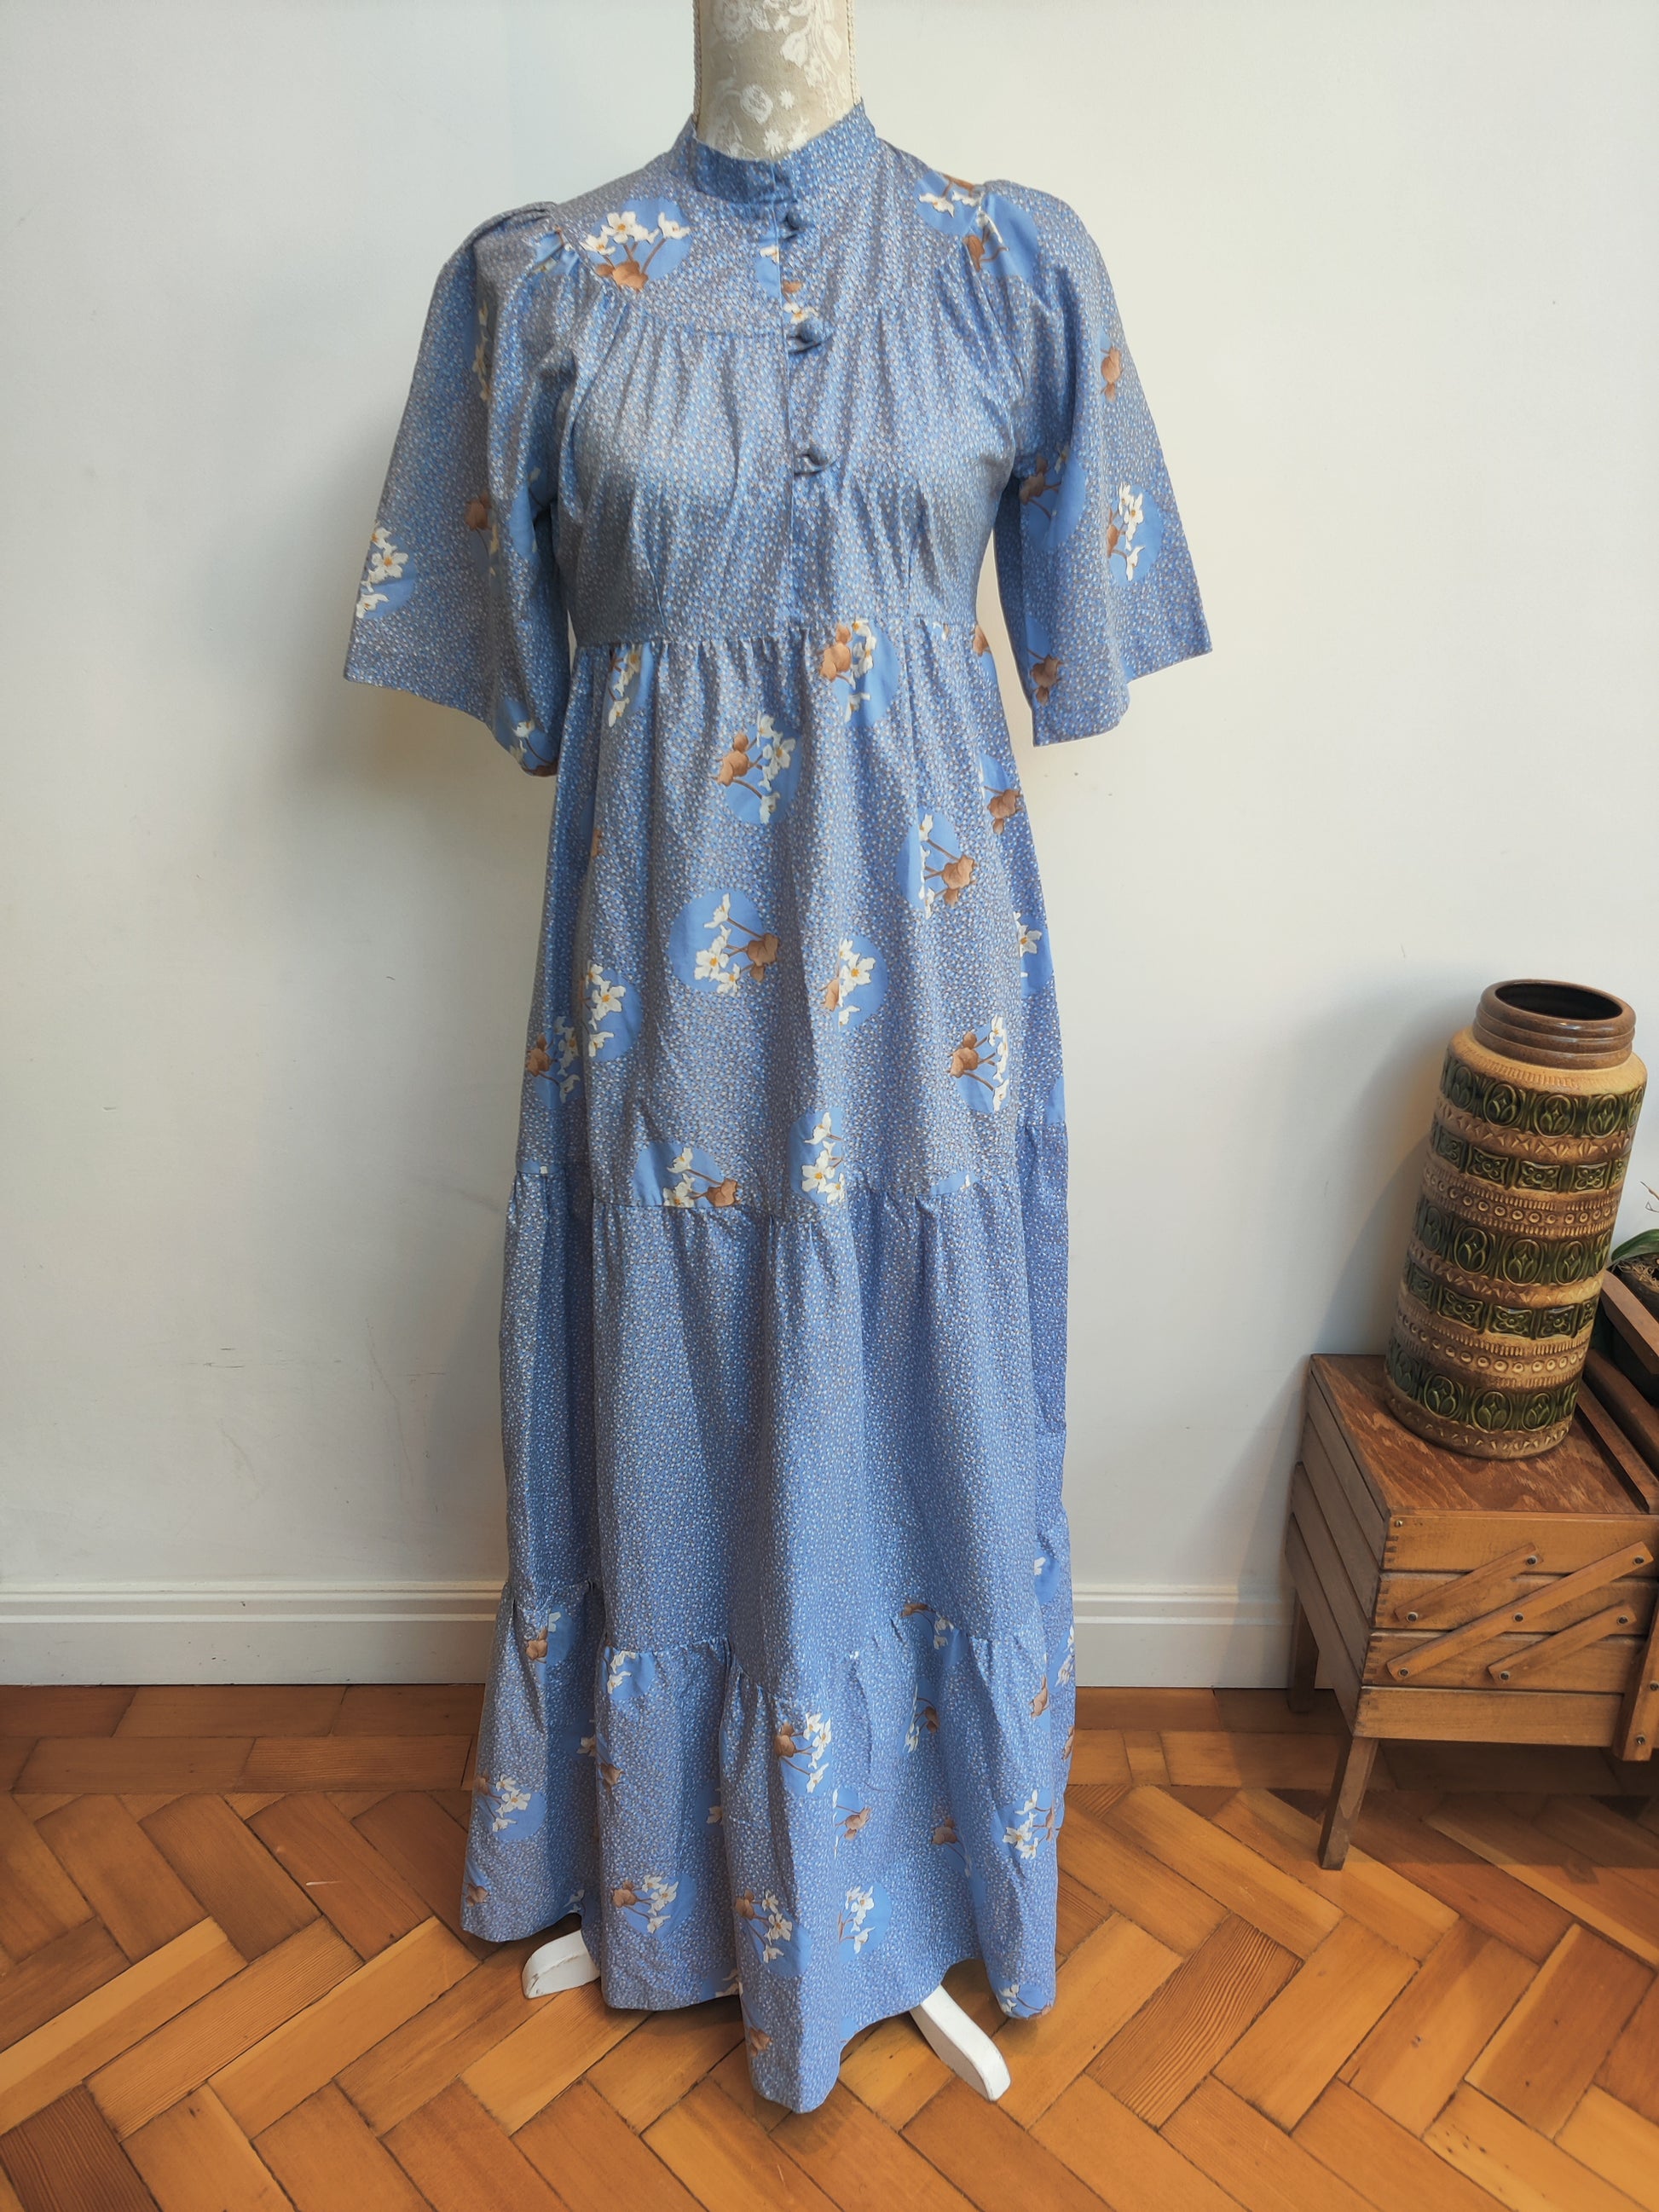 Ditzy print vintage maxi dress size 8-10